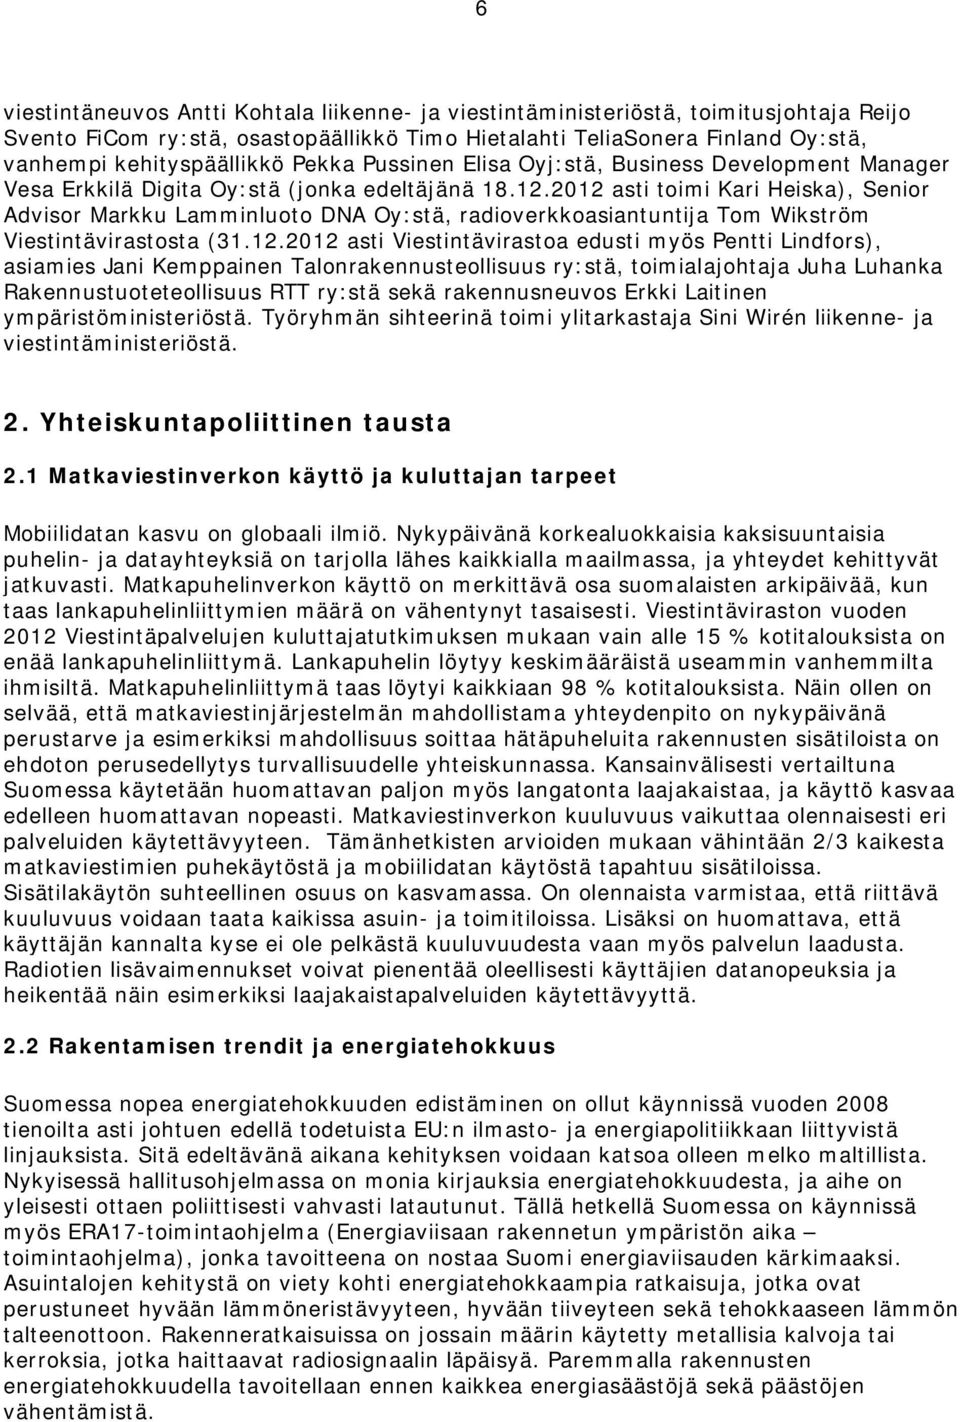 2012 asti toimi Kari Heiska), Senior Advisor Markku Lamminluoto DNA Oy:stä, radioverkkoasiantuntija Tom Wikström Viestintävirastosta (31.12.2012 asti Viestintävirastoa edusti myös Pentti Lindfors),